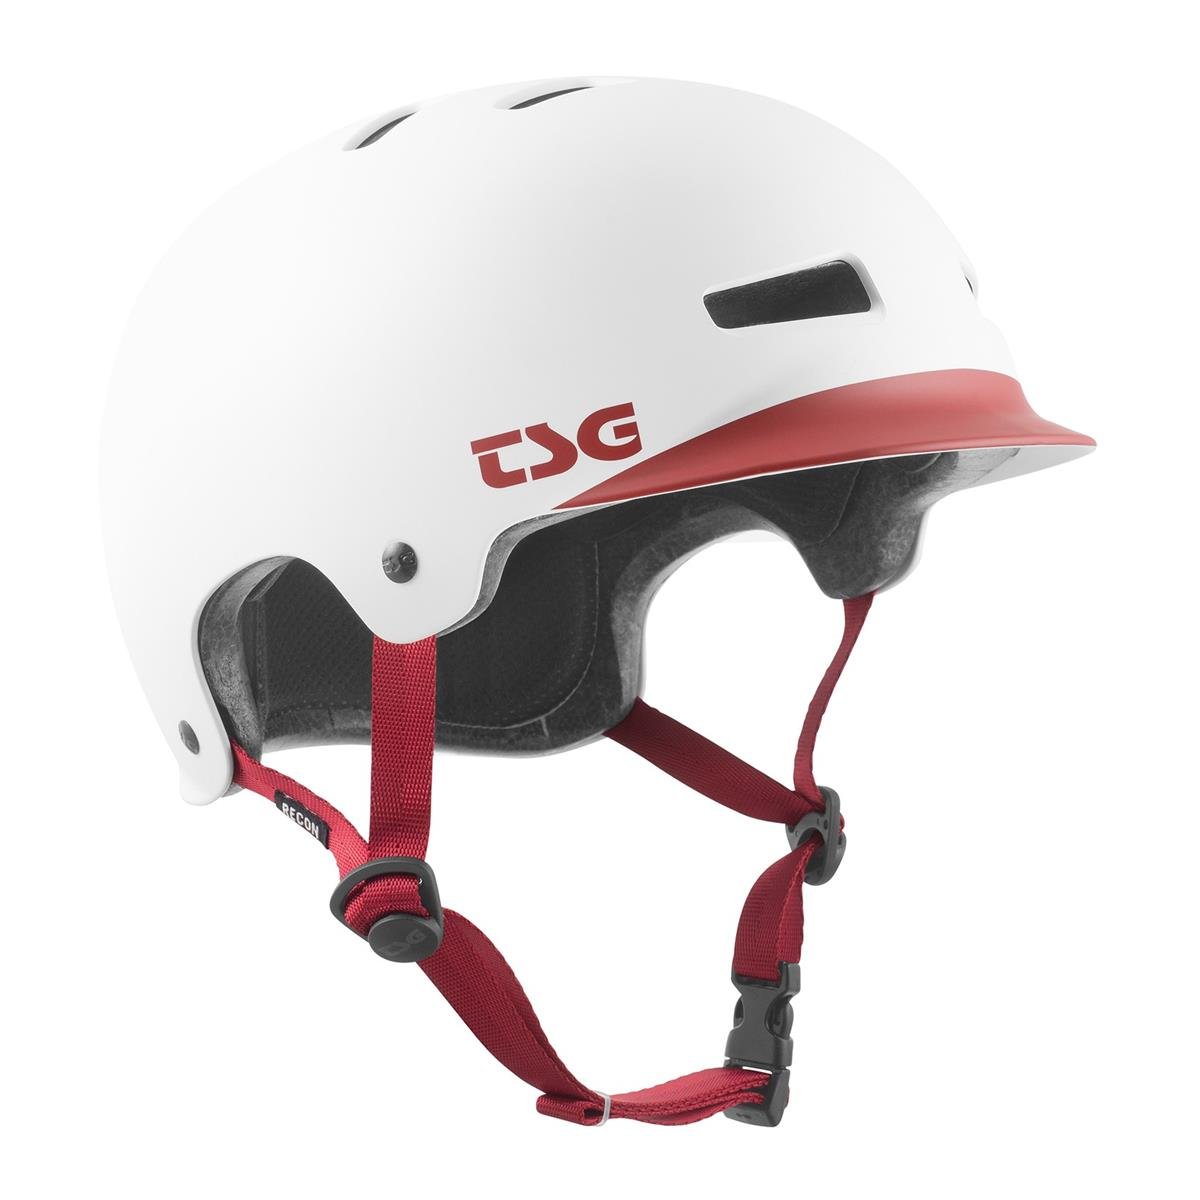 TSG BMX/Dirt Helmet Recon Graphic Design - Cap White